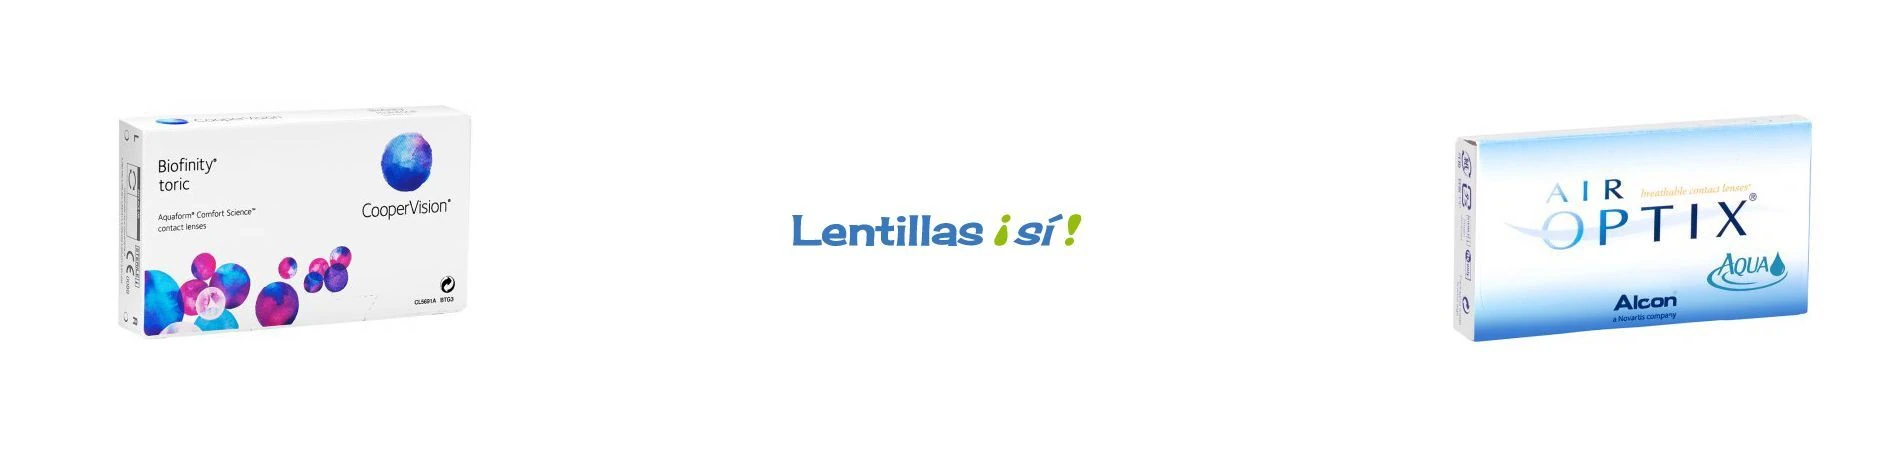 Lifting Group y Lentillas sí, Our Clients Our Success